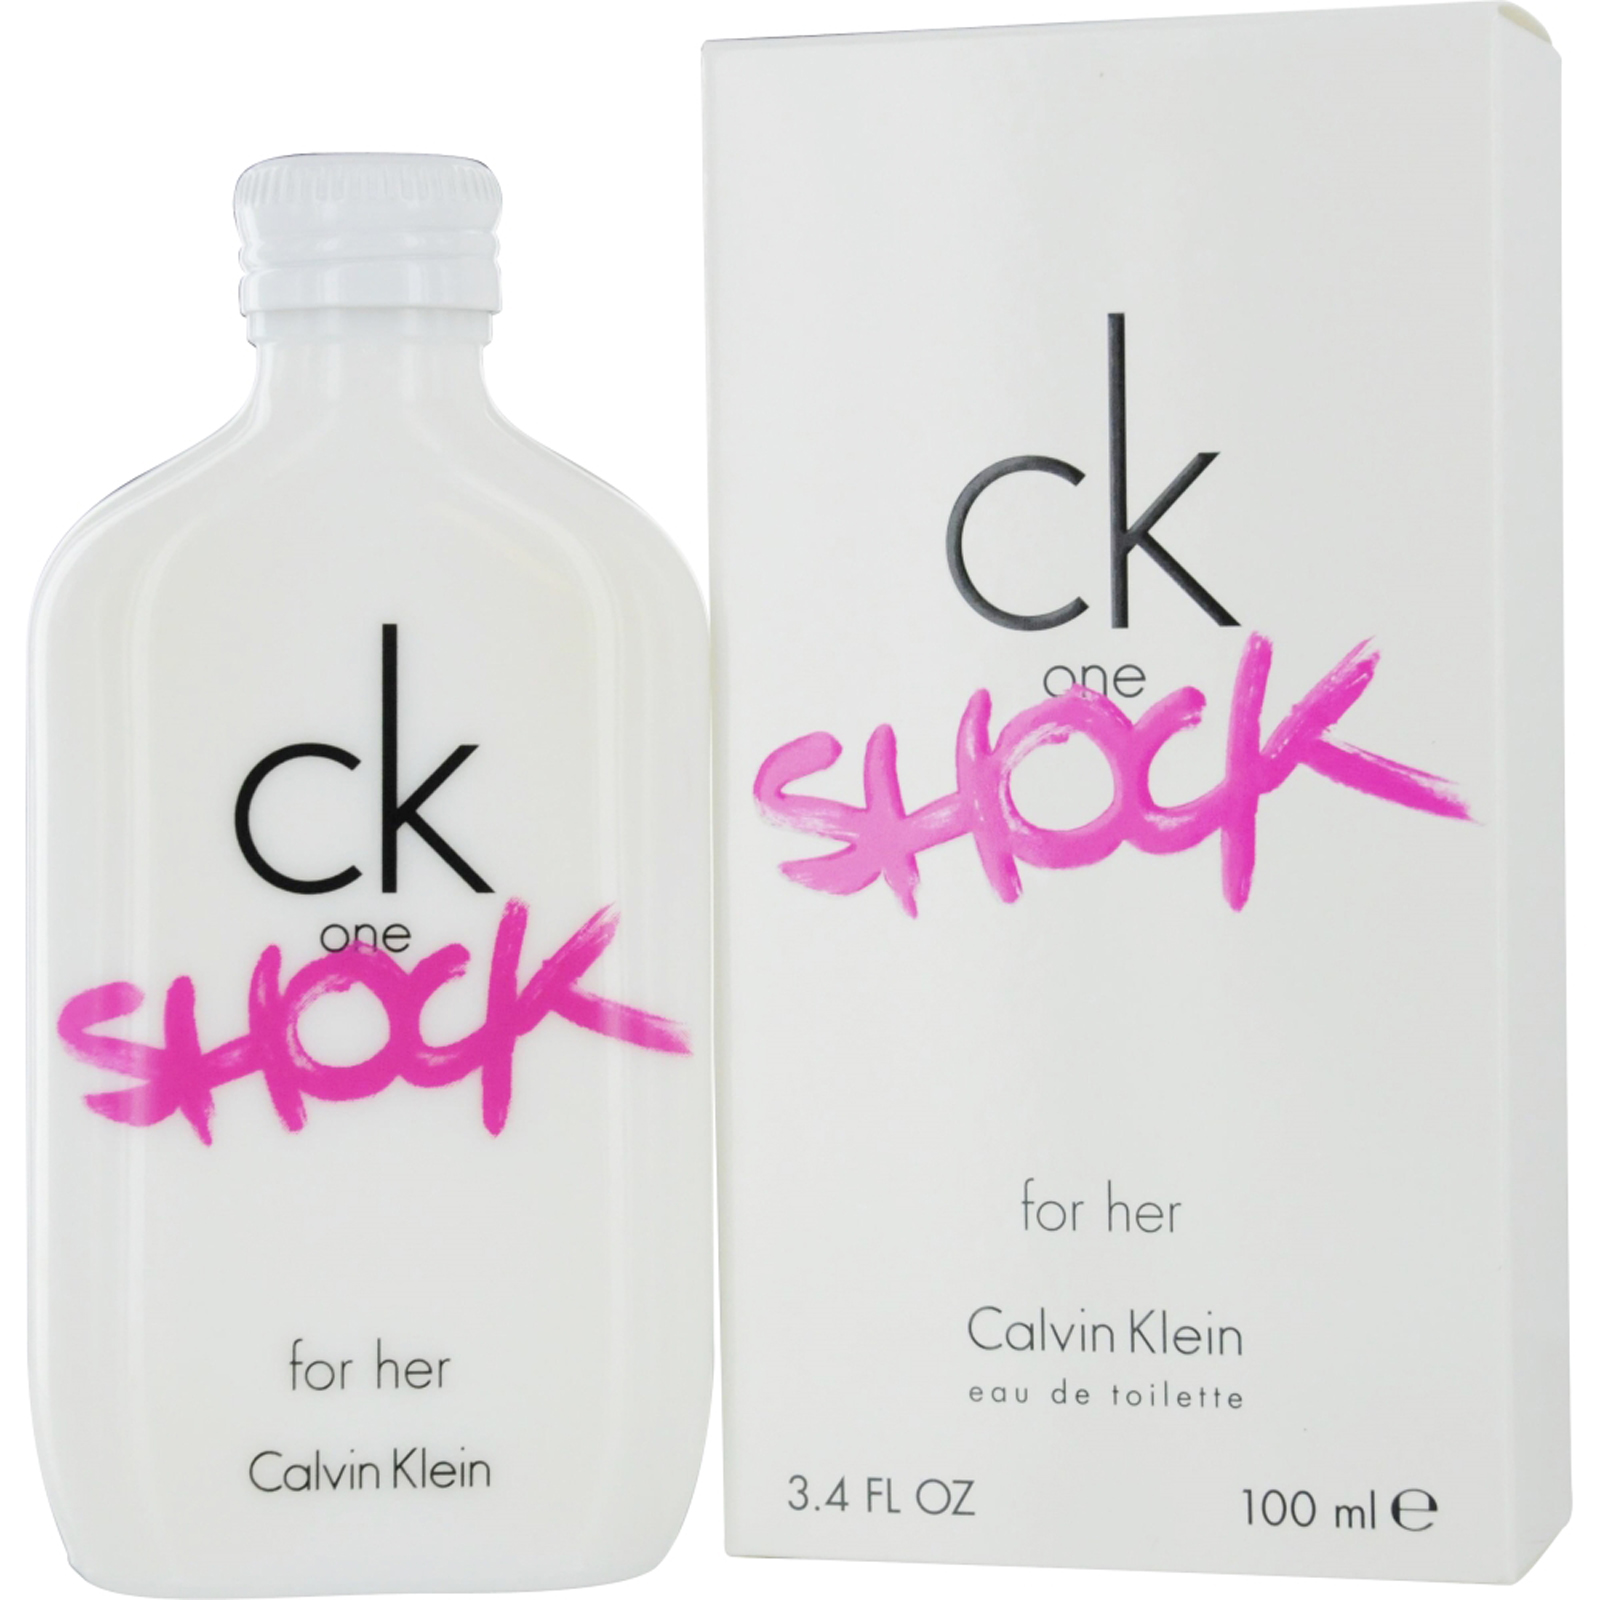 Calvin Klein Ck One Shock Edt Spray 3.4 Oz For Women